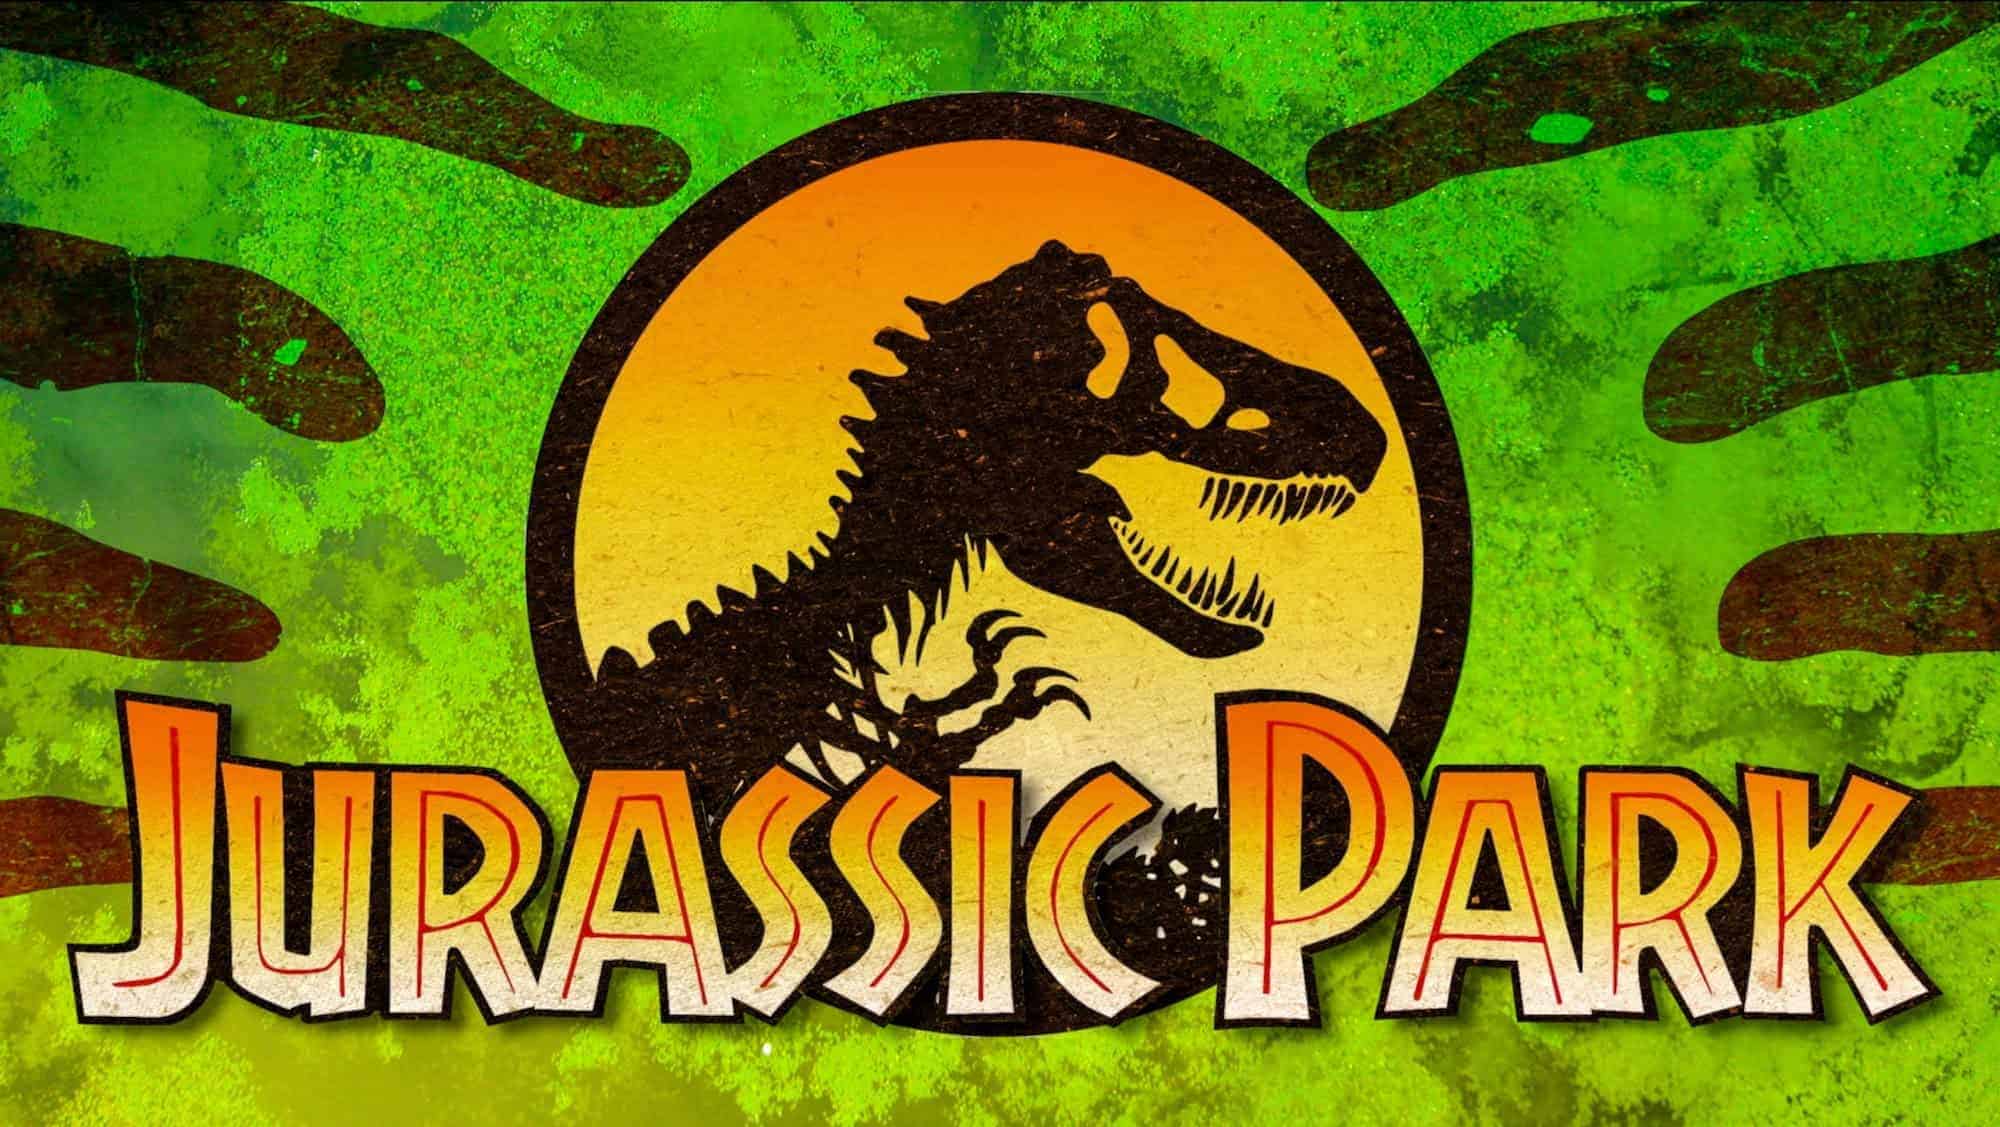 Jurassic Park: Görsel Efektlerin Sınırlarını Zorlamak